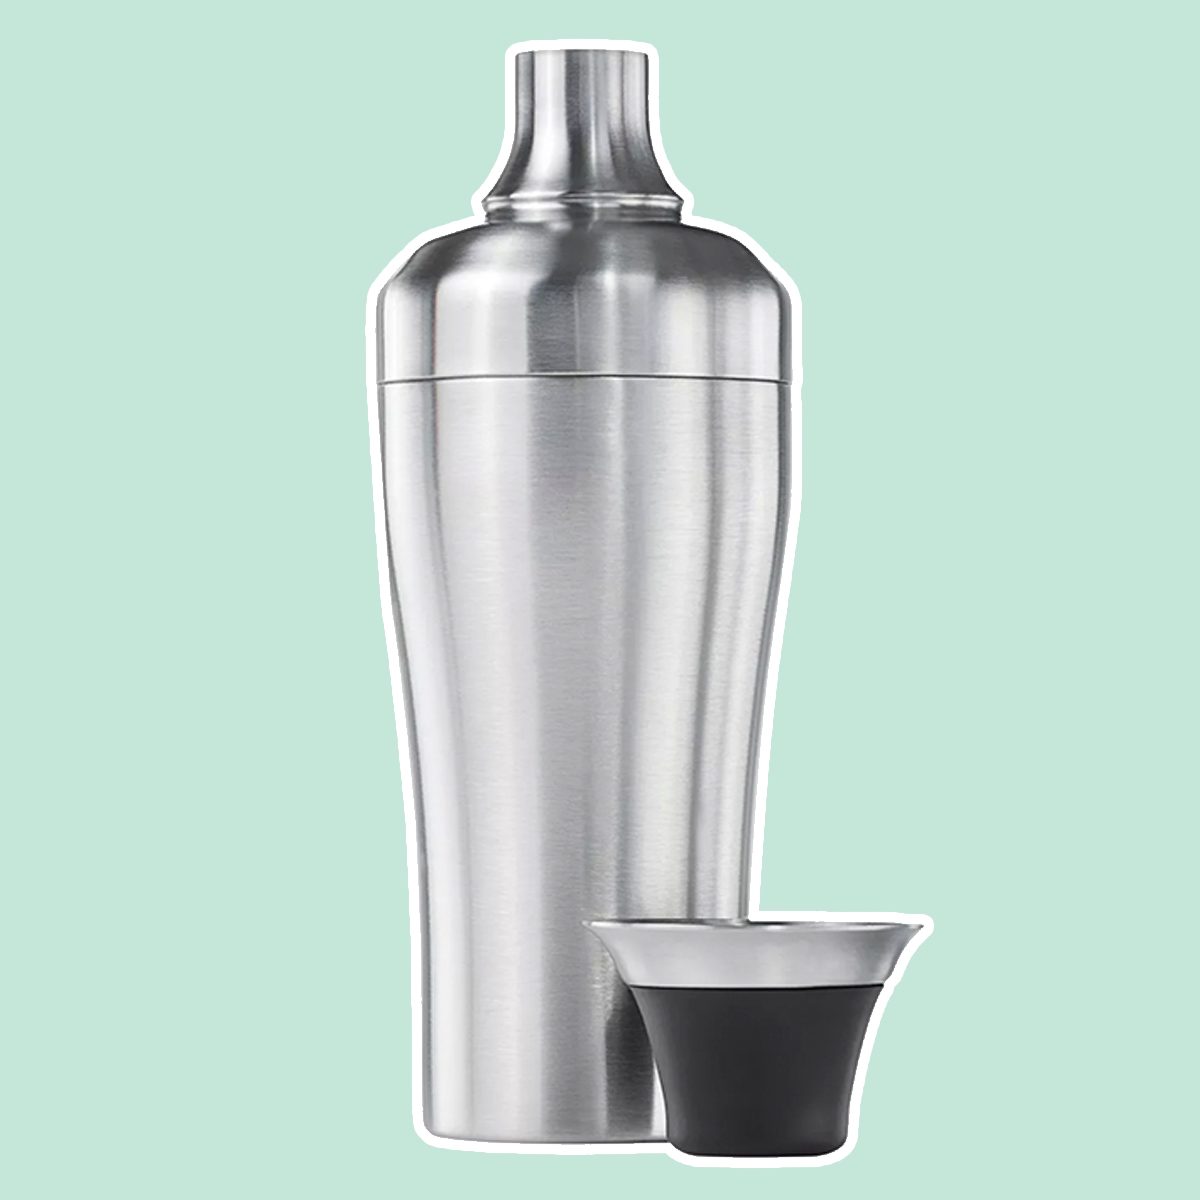 https://www.tasteofhome.com/wp-content/uploads/2019/10/OXO-Stainless-Steel-Shaker.jpg?fit=700%2C700